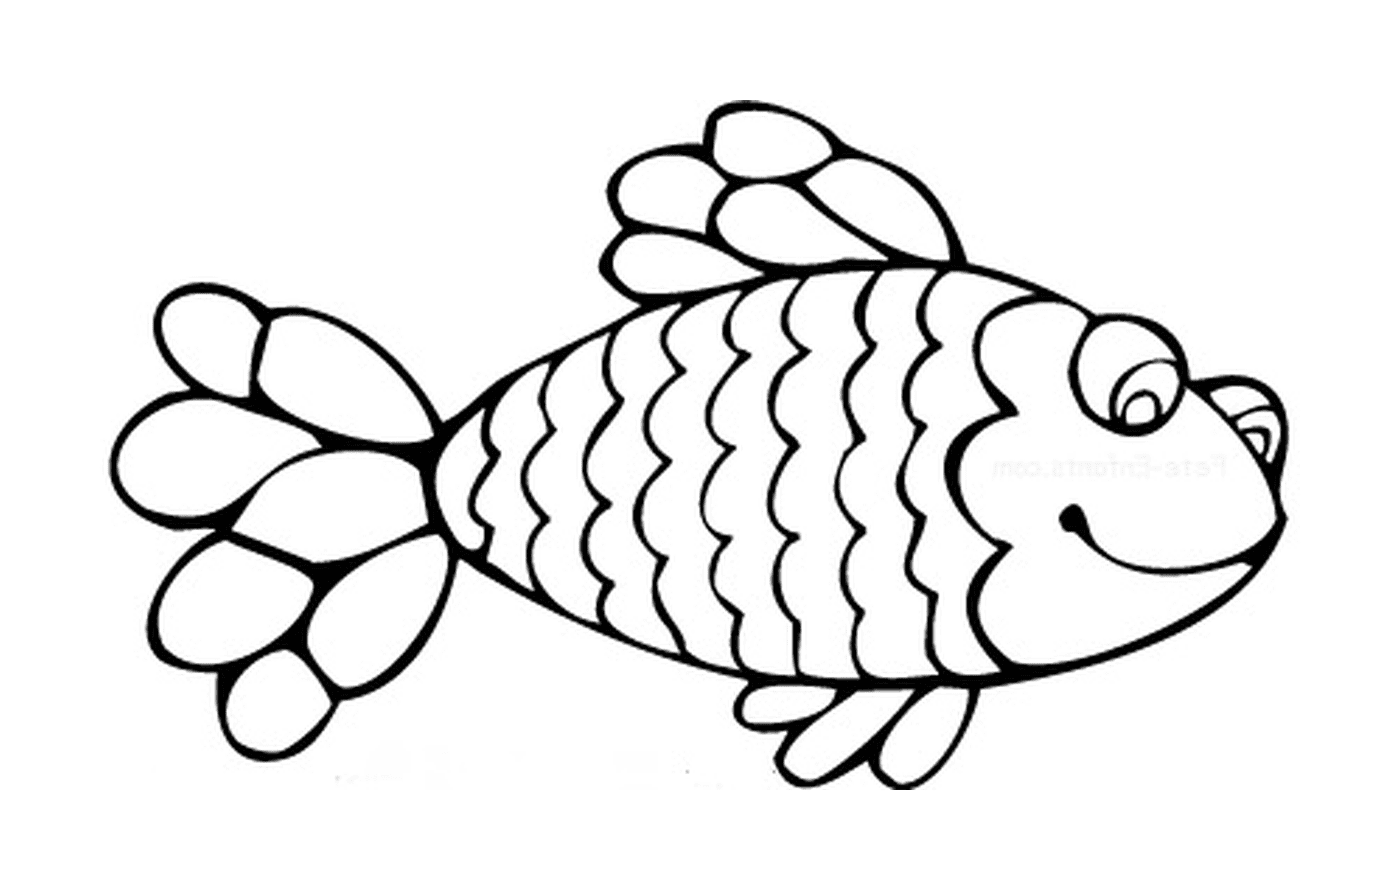  Simple April fish 